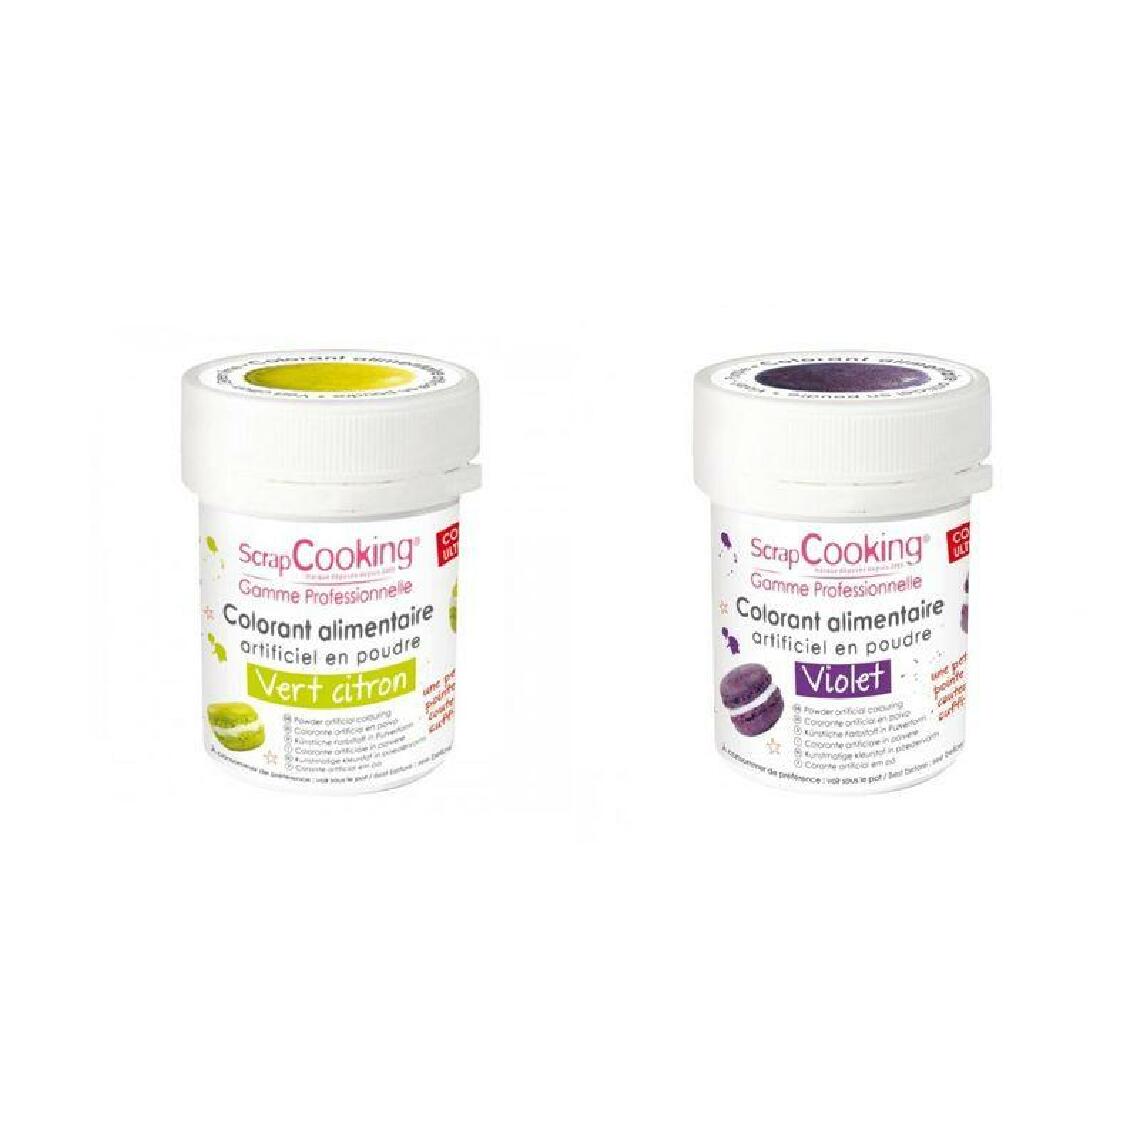 Scrapcooking - 2 colorants alimentaires en poudre - violet-vert citron - Kits créatifs